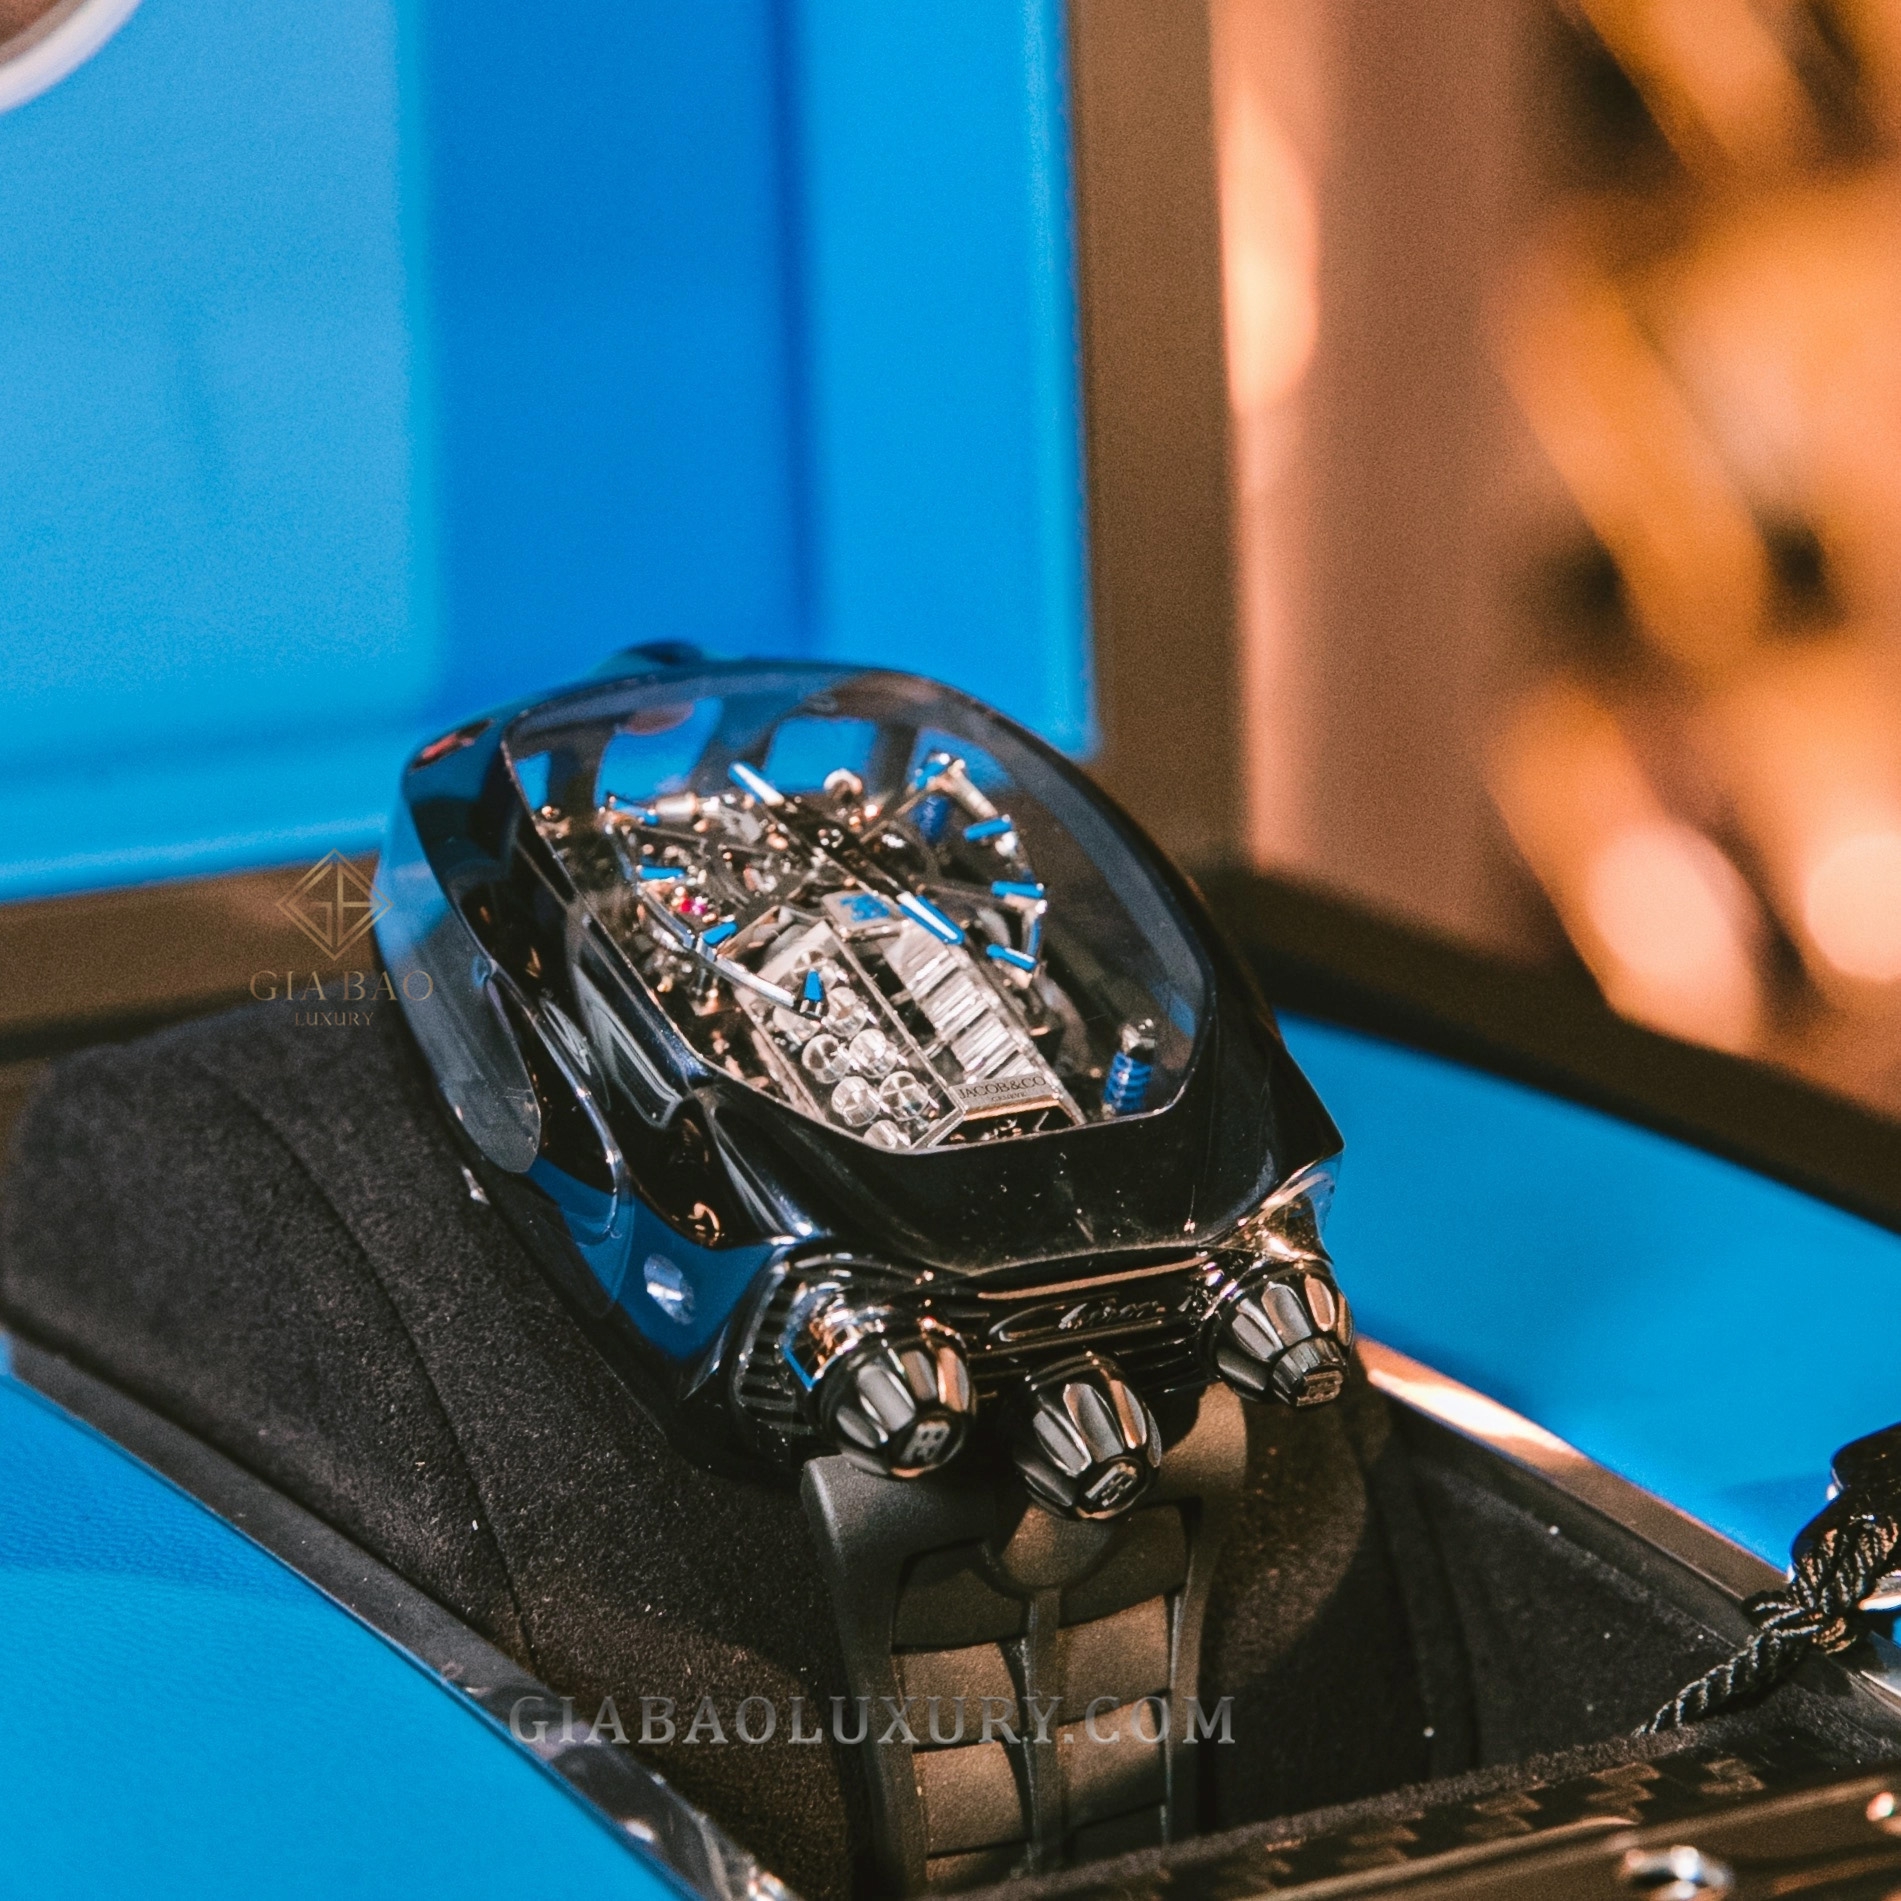 Đồng hồ Jacob & Co. Bugatti Chiron Tourbillon: Siêu xe ước mơ có ngay trên cổ tay